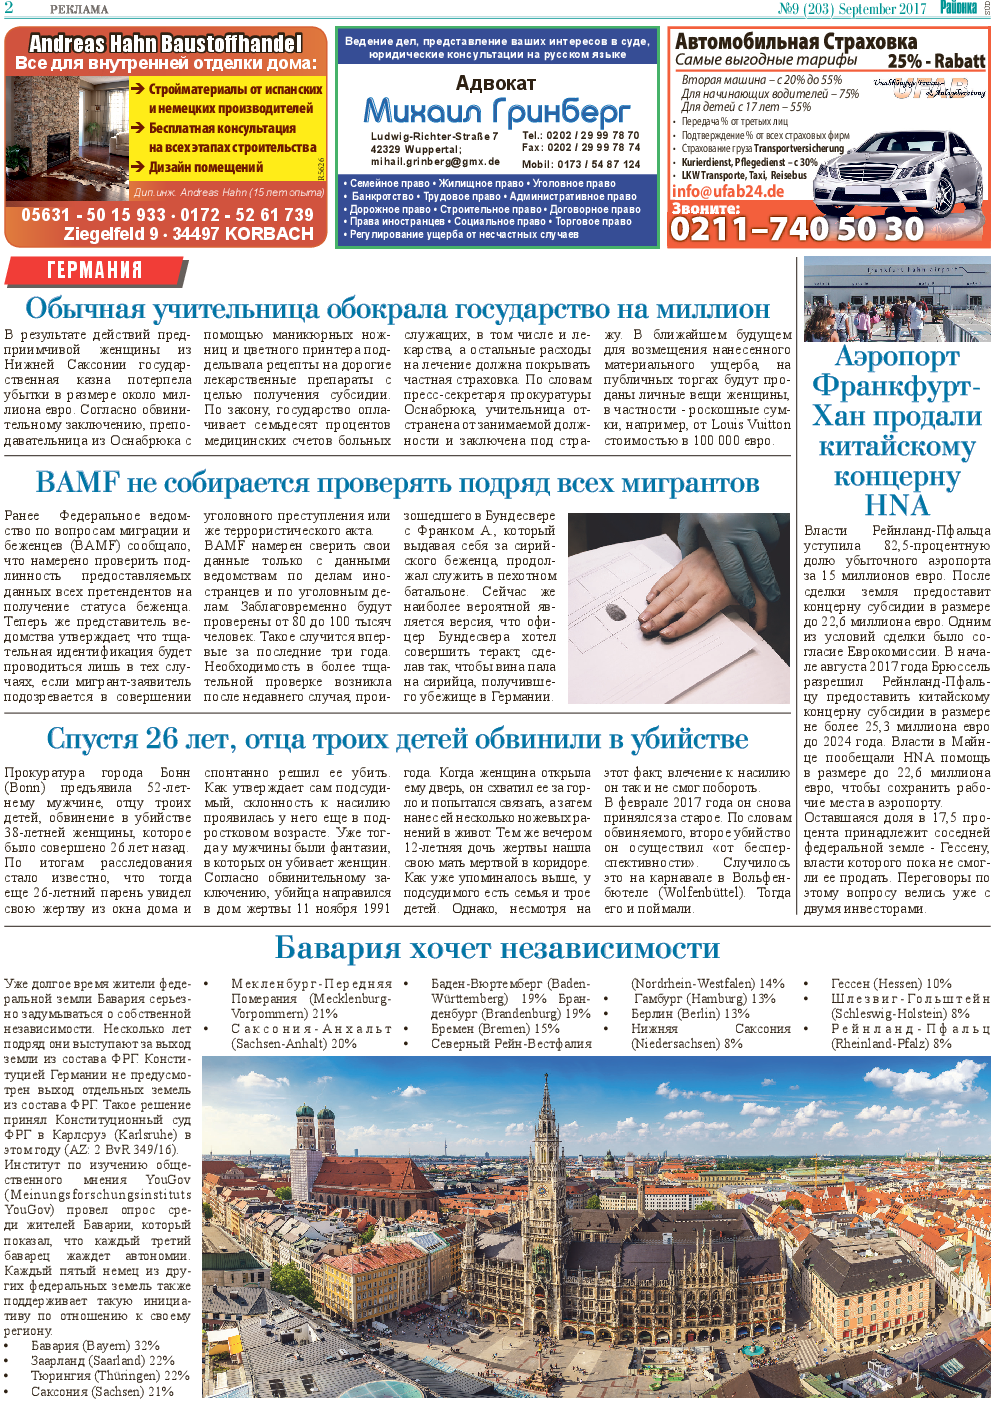 Районка-Süd-West, газета. 2017 №9 стр.2